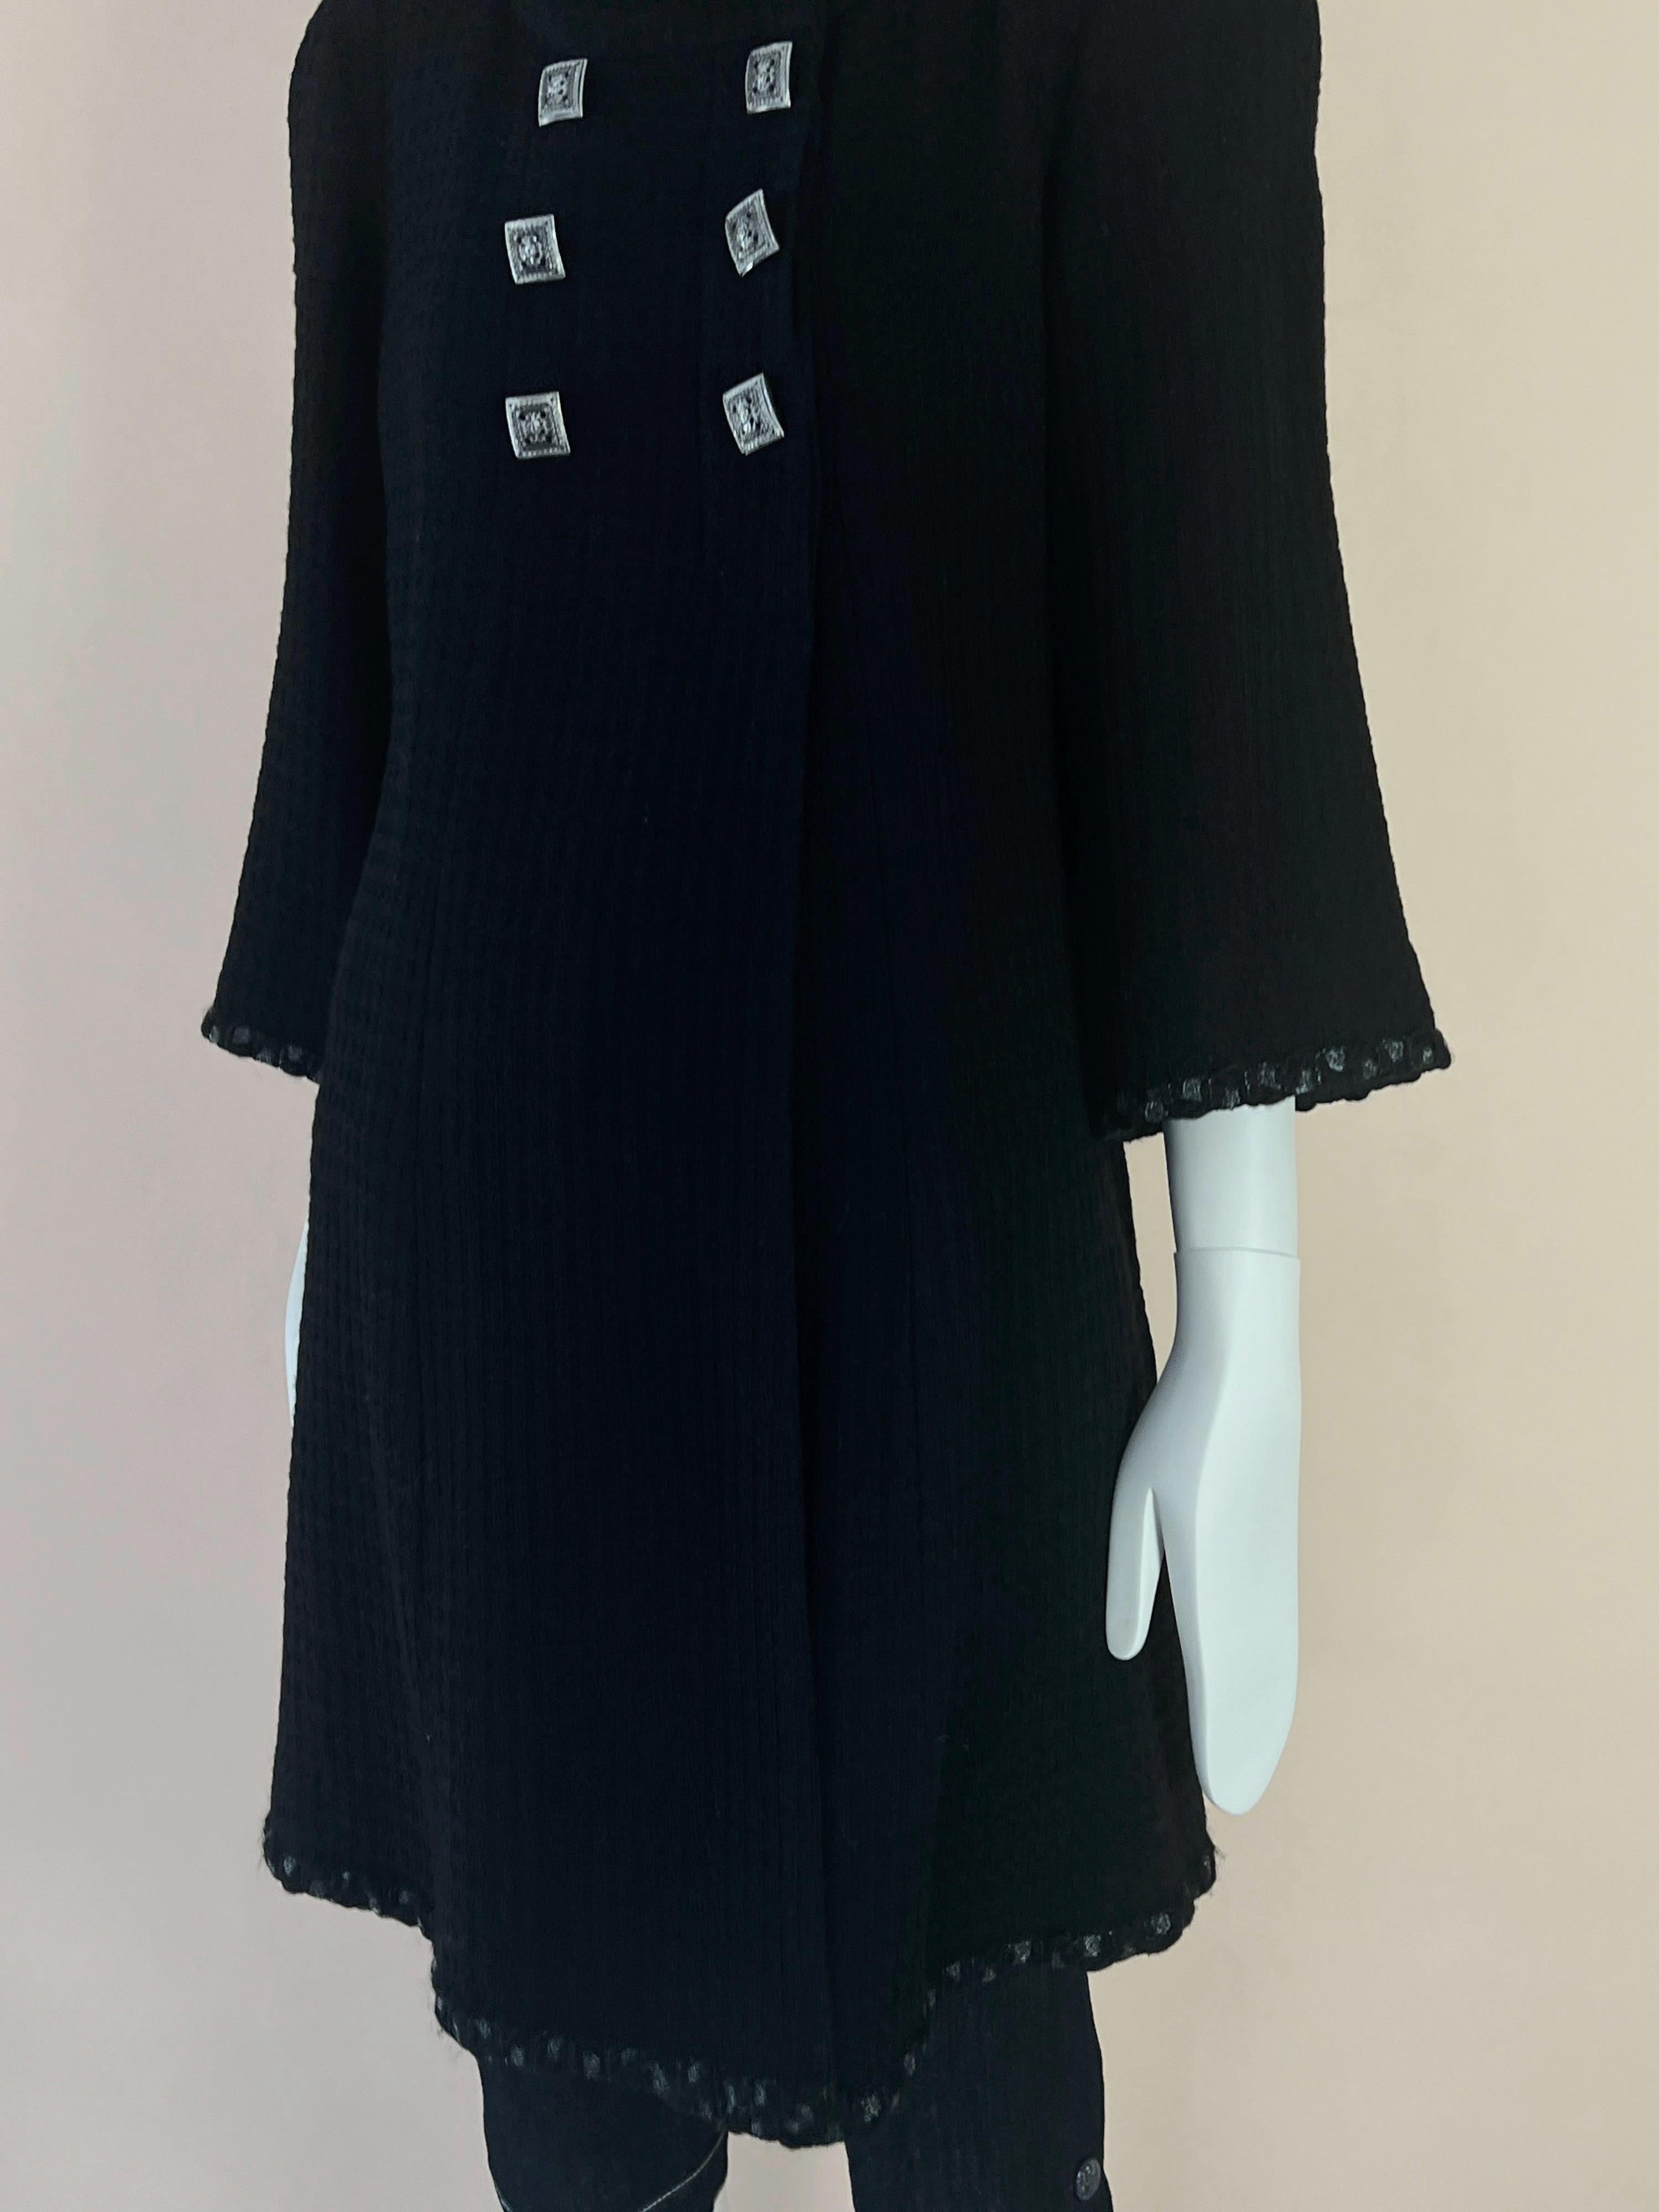 Chanel Cameron Diaz Jewel Buttons Tweed Coat 1